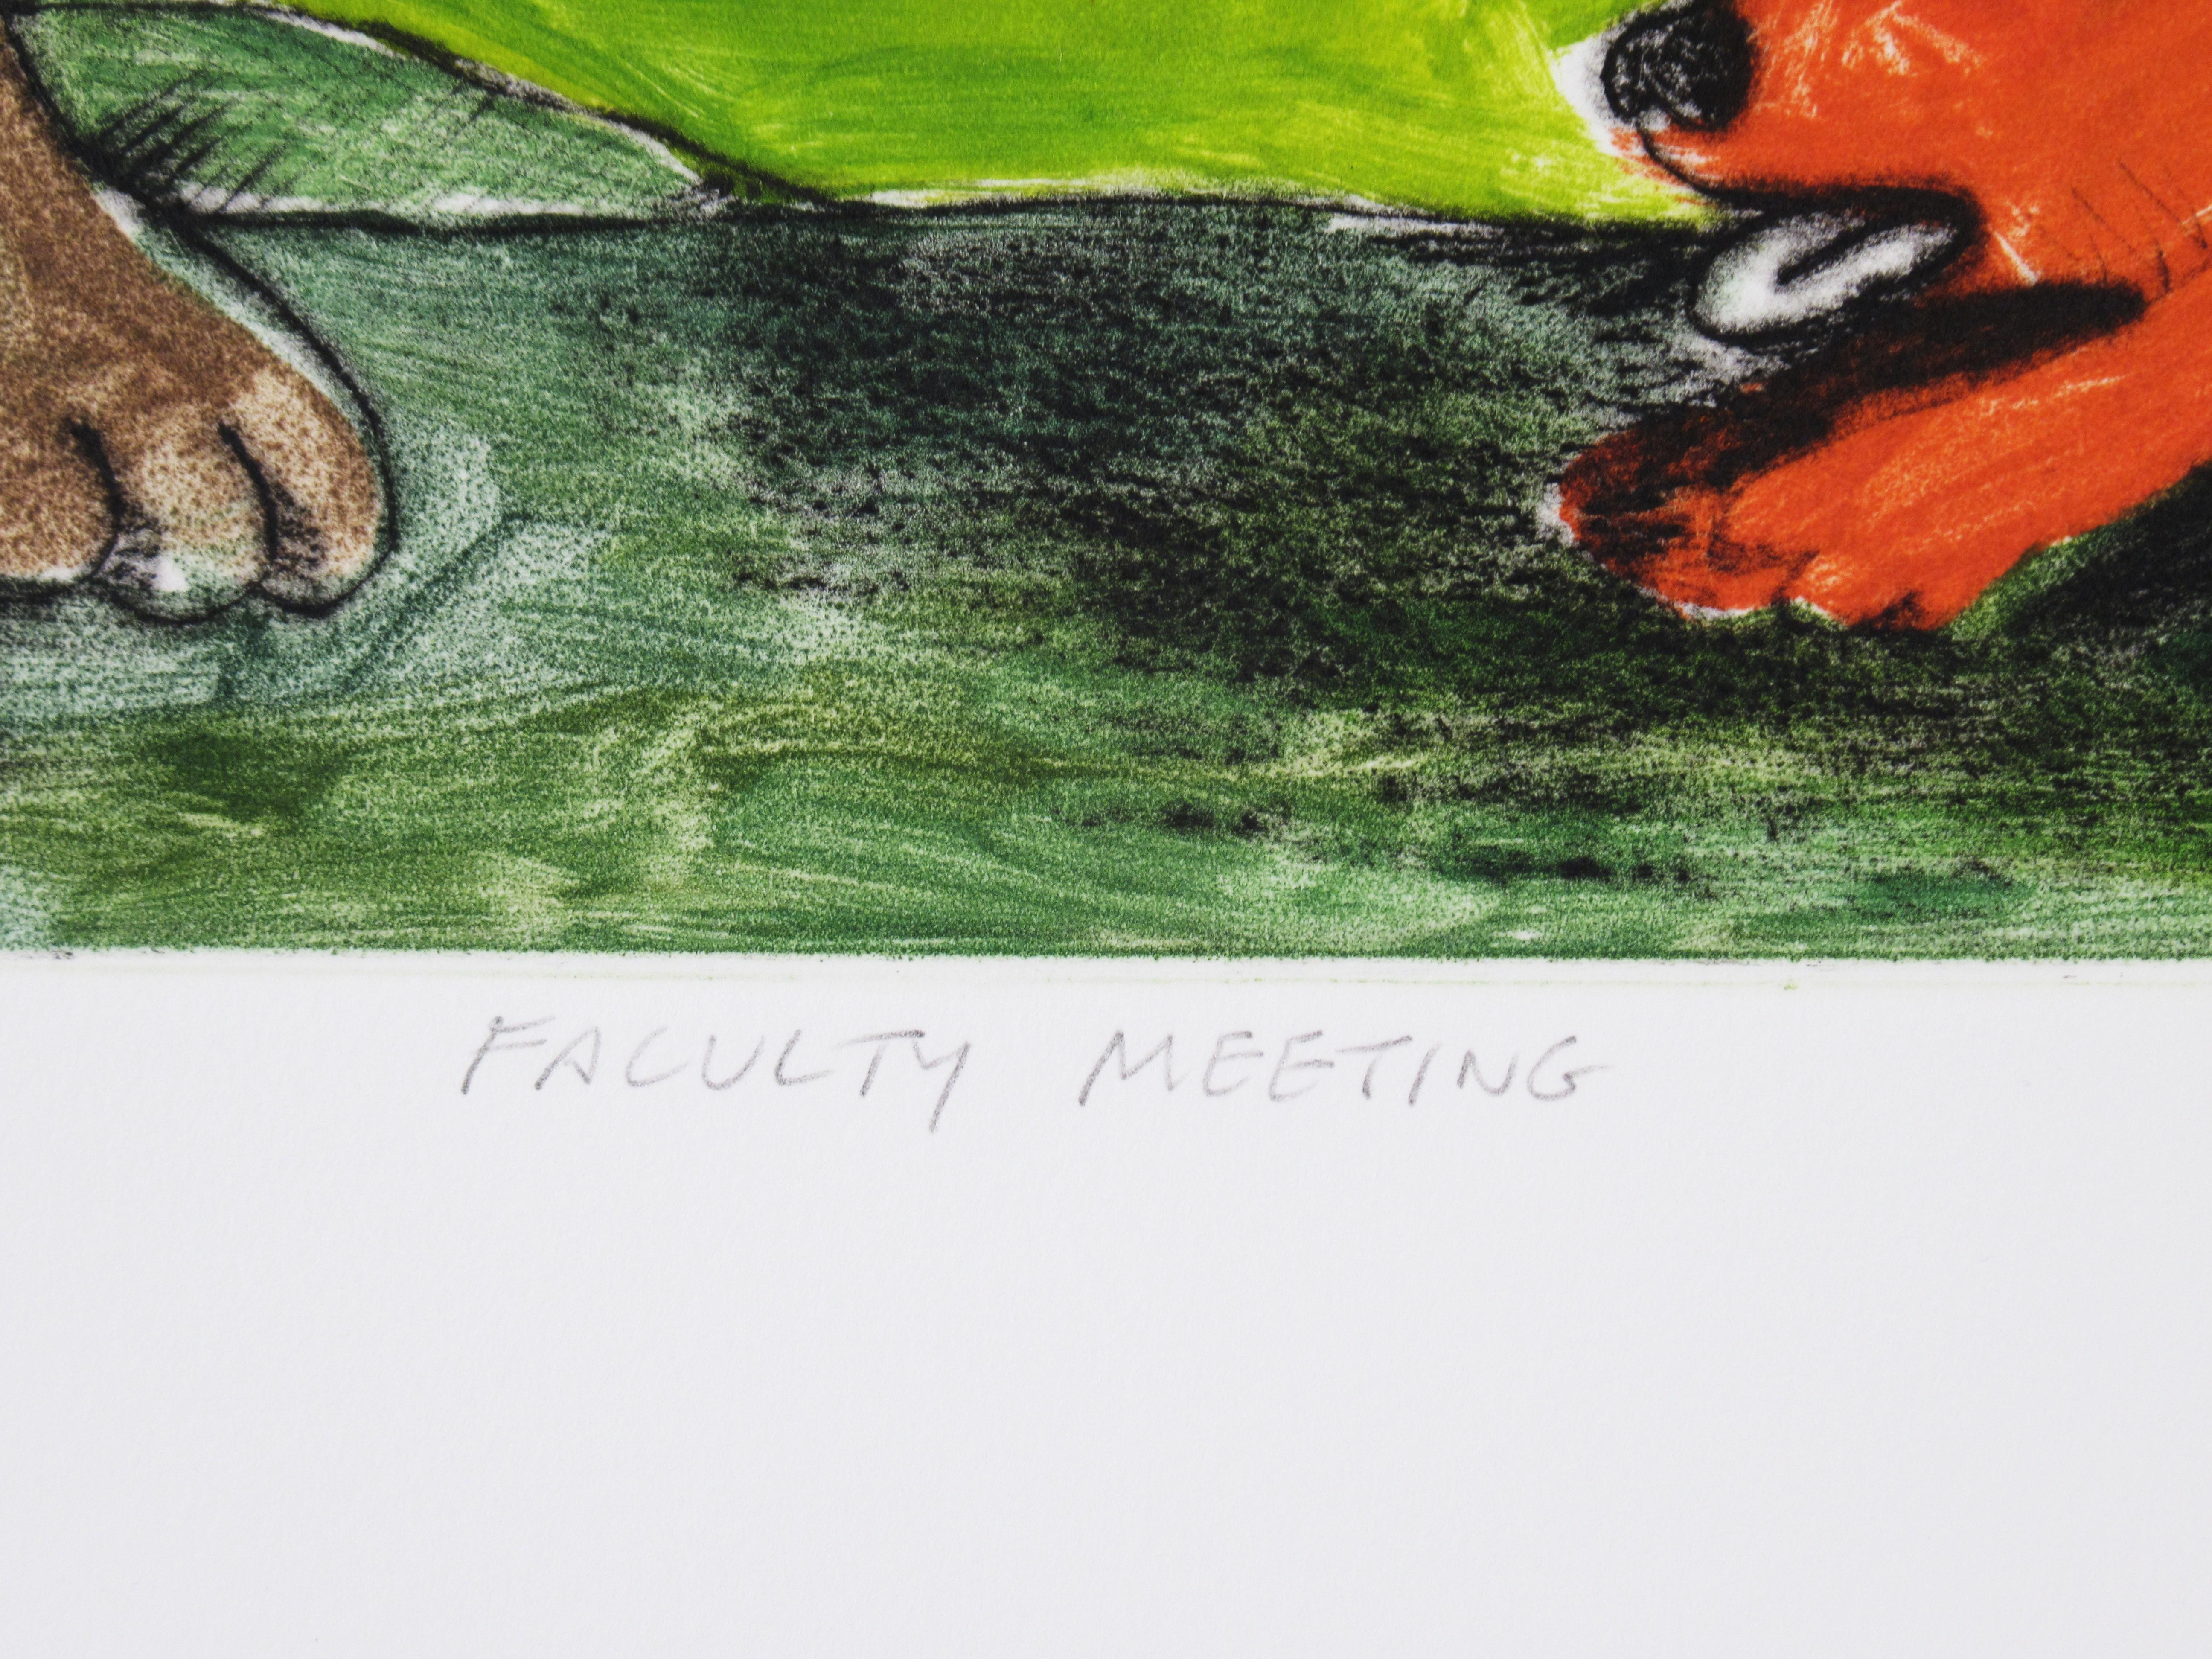 Faculty Meeting - Beige Animal Print by Kelly Detweiler